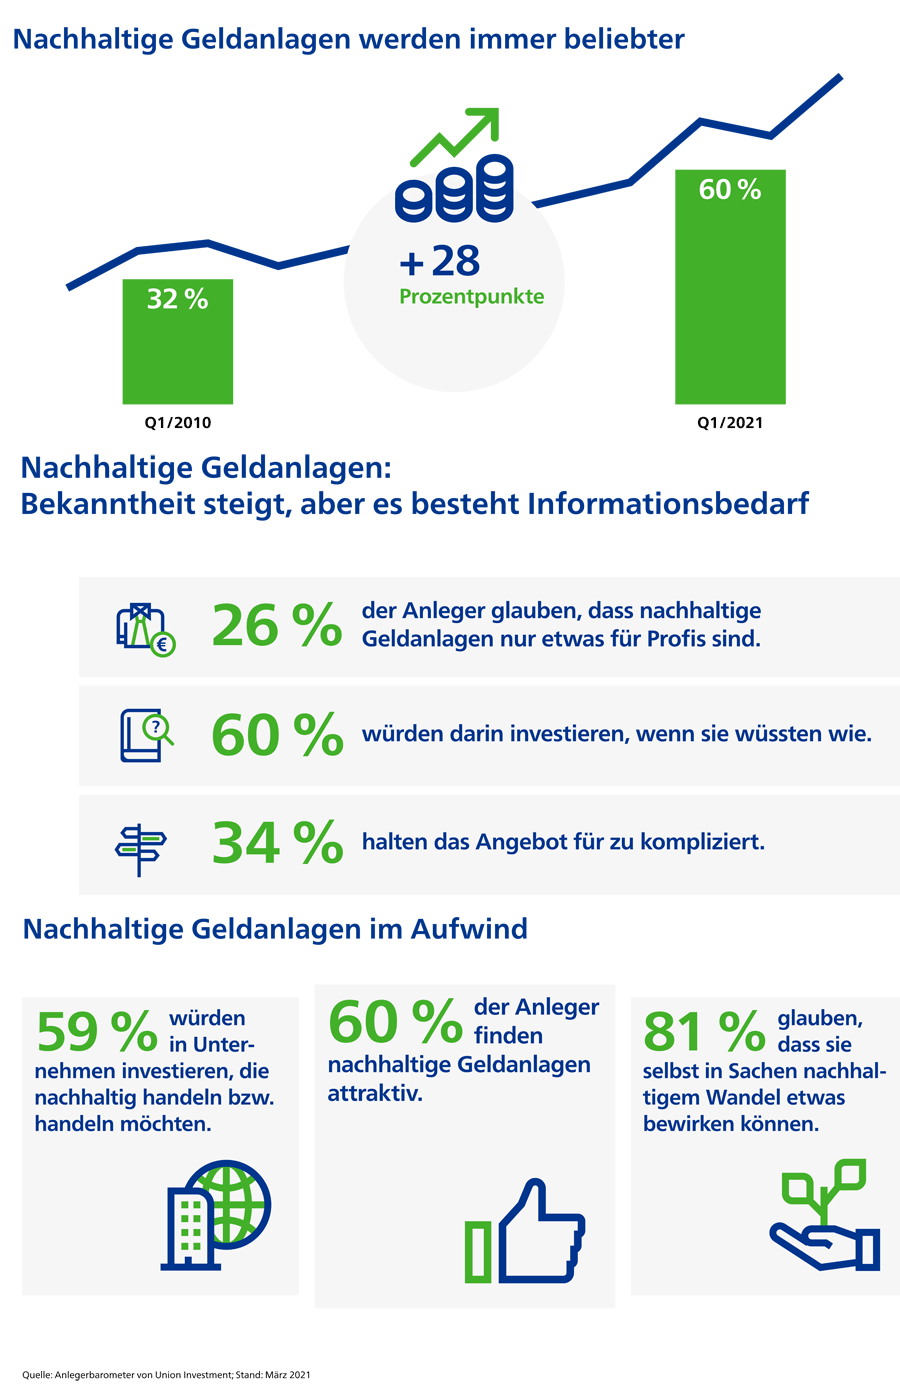 Infografik: Beliebtheit nachhaltiger Geldanlagen in Deutschland